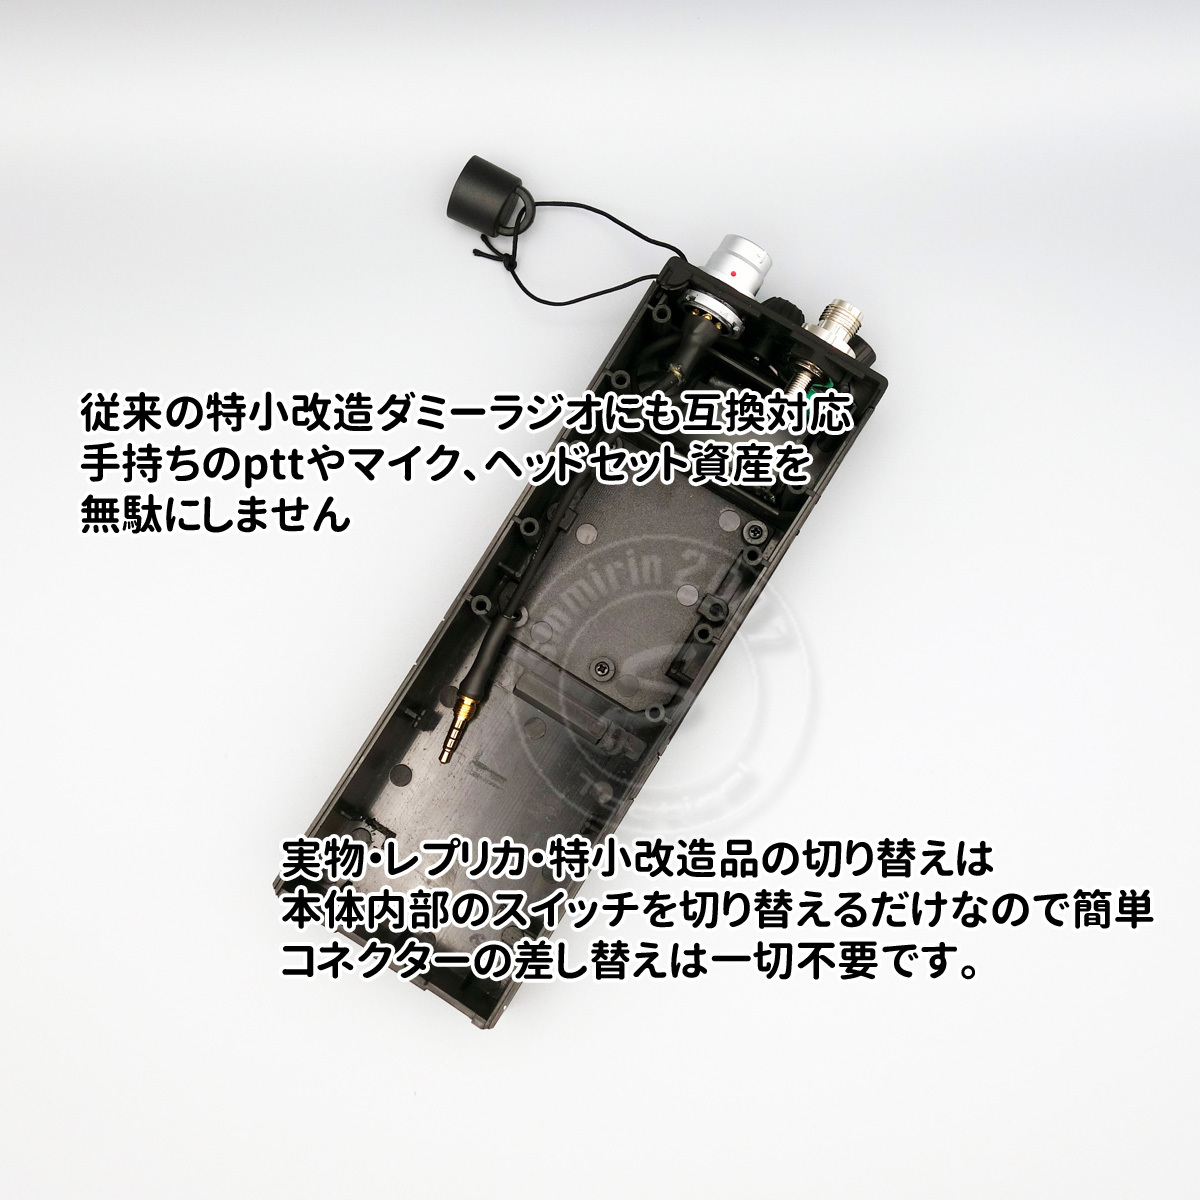 ☆ダミーラジオ PRC-148 万能モデル 光るタイプ 新回路内蔵 アンプ入り ミリタリーバージョンOK サバゲー MBITR_画像6